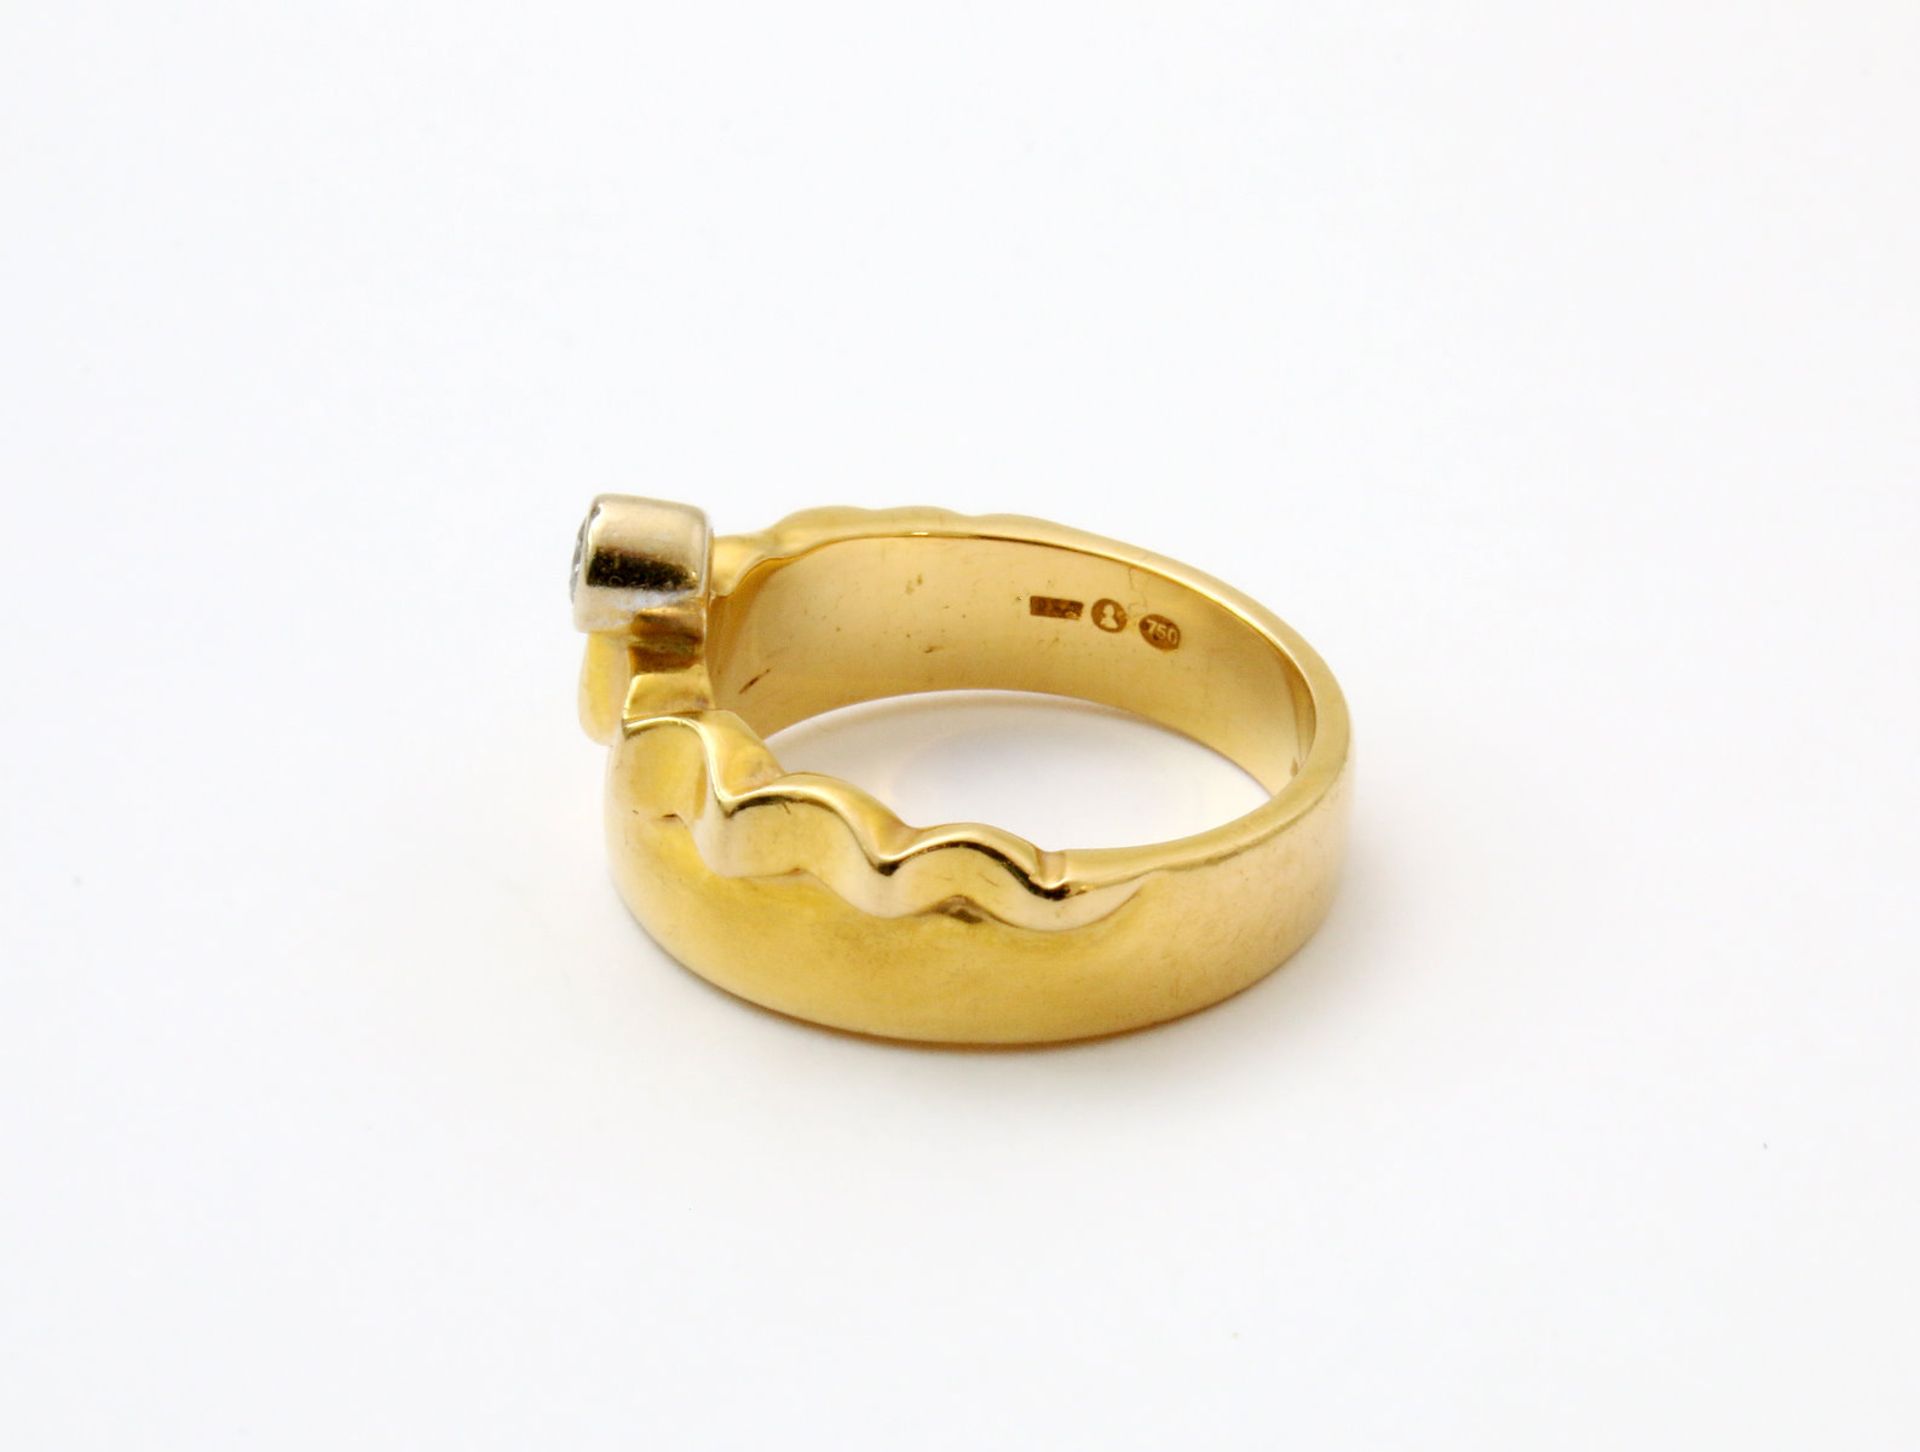 Gelbgold Brillantring GG 750, besetzt mit einem Brillanten ca. 0,10 ct. Ringgröße 52. Gewicht: 8,5 - Bild 3 aus 4